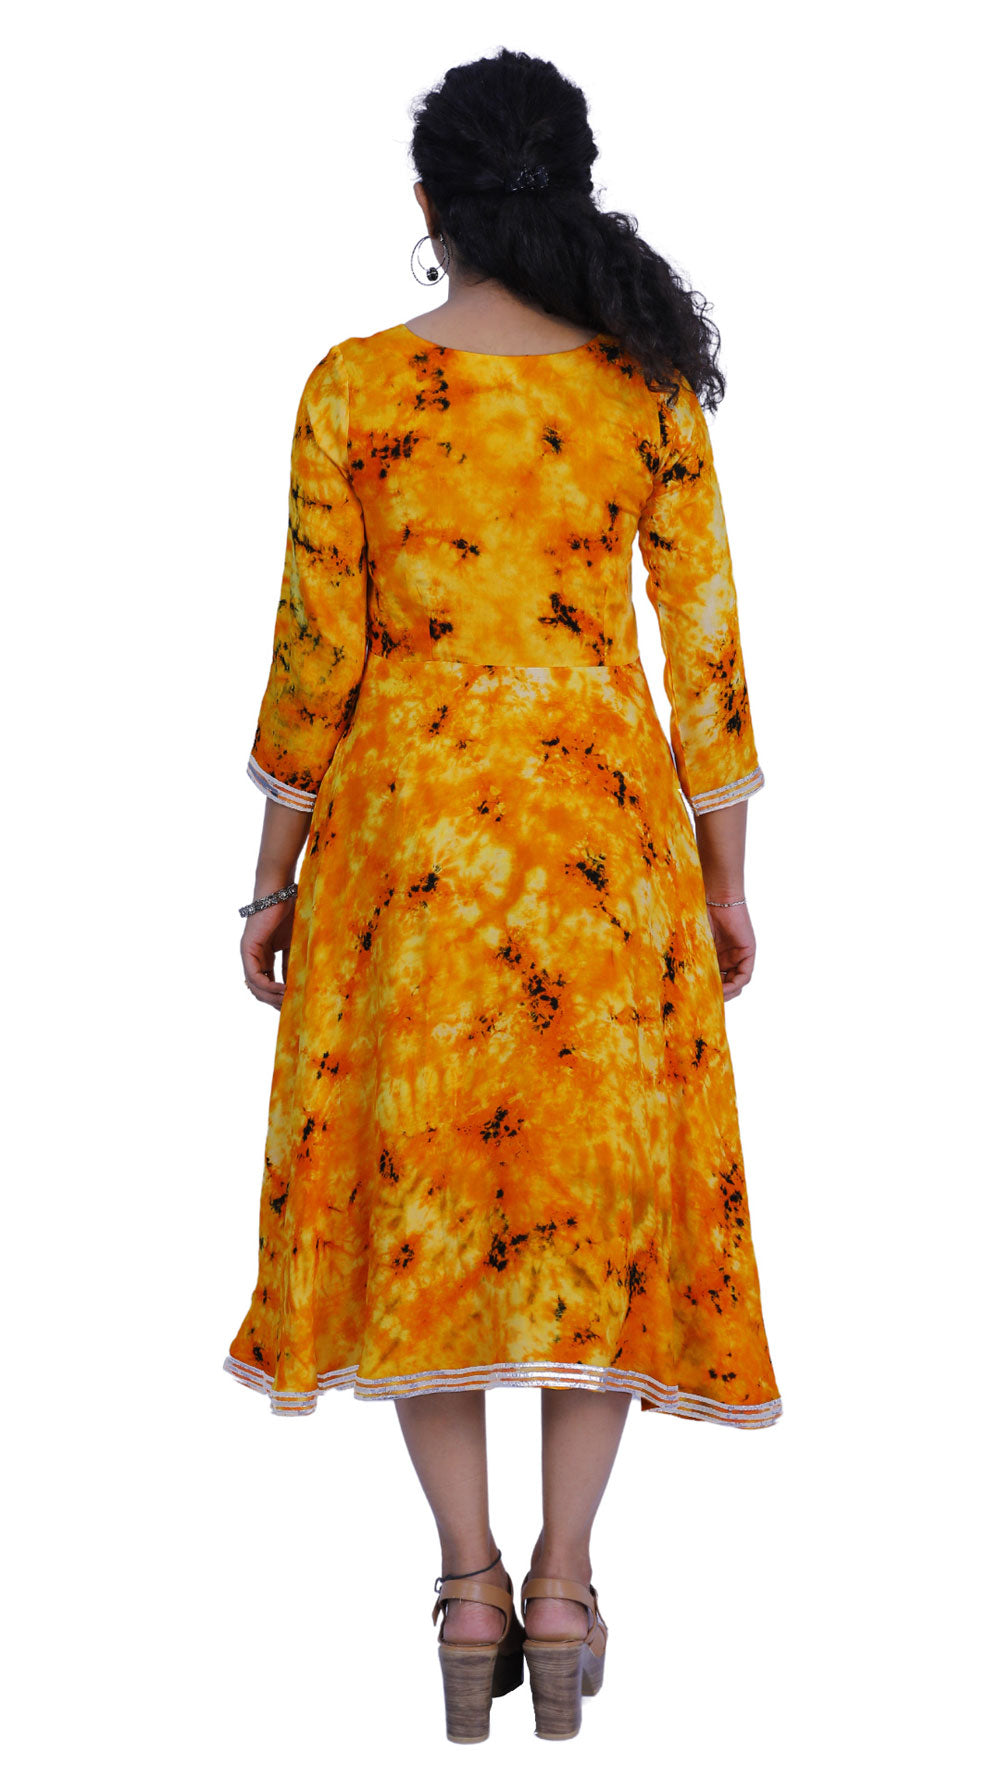 Women Ethnic Yellow Dress | S3K336